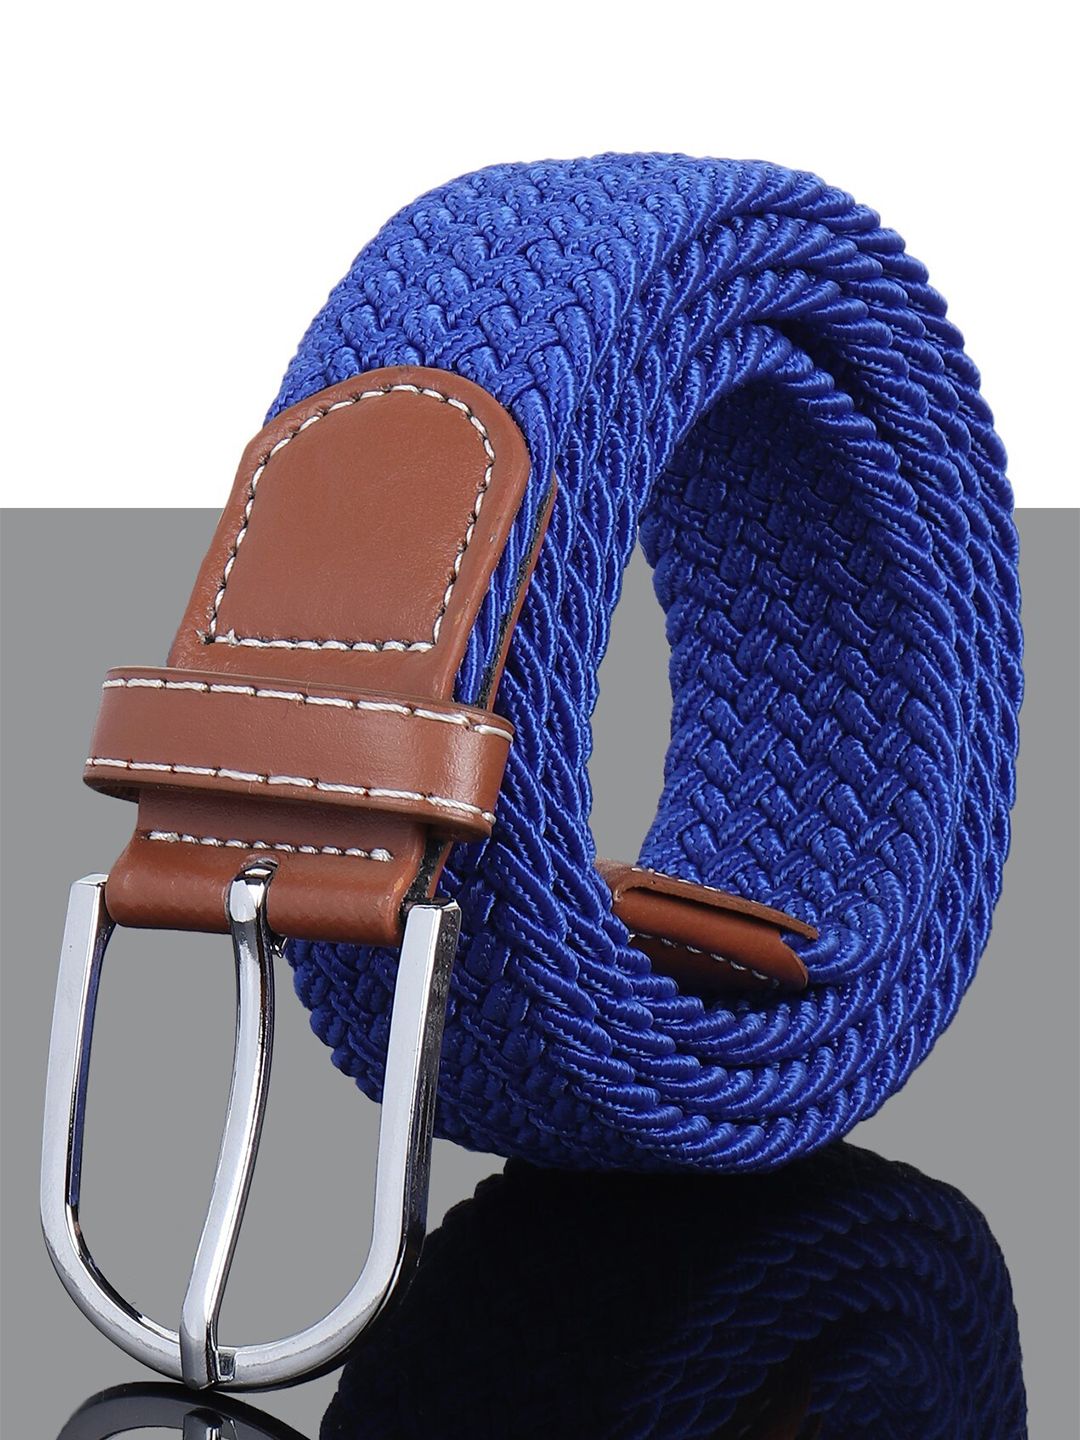 Kastner Unisex Blue Woven Design Belt Price in India